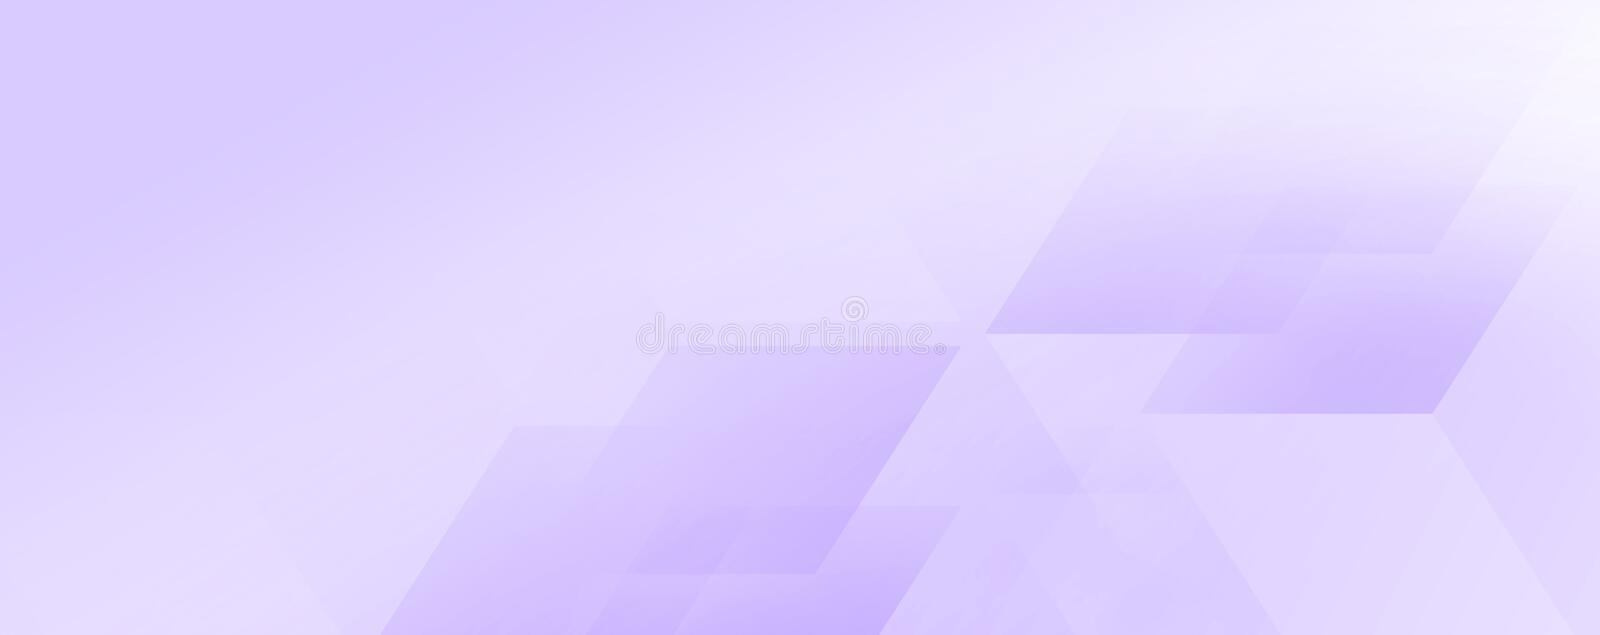 violet banner